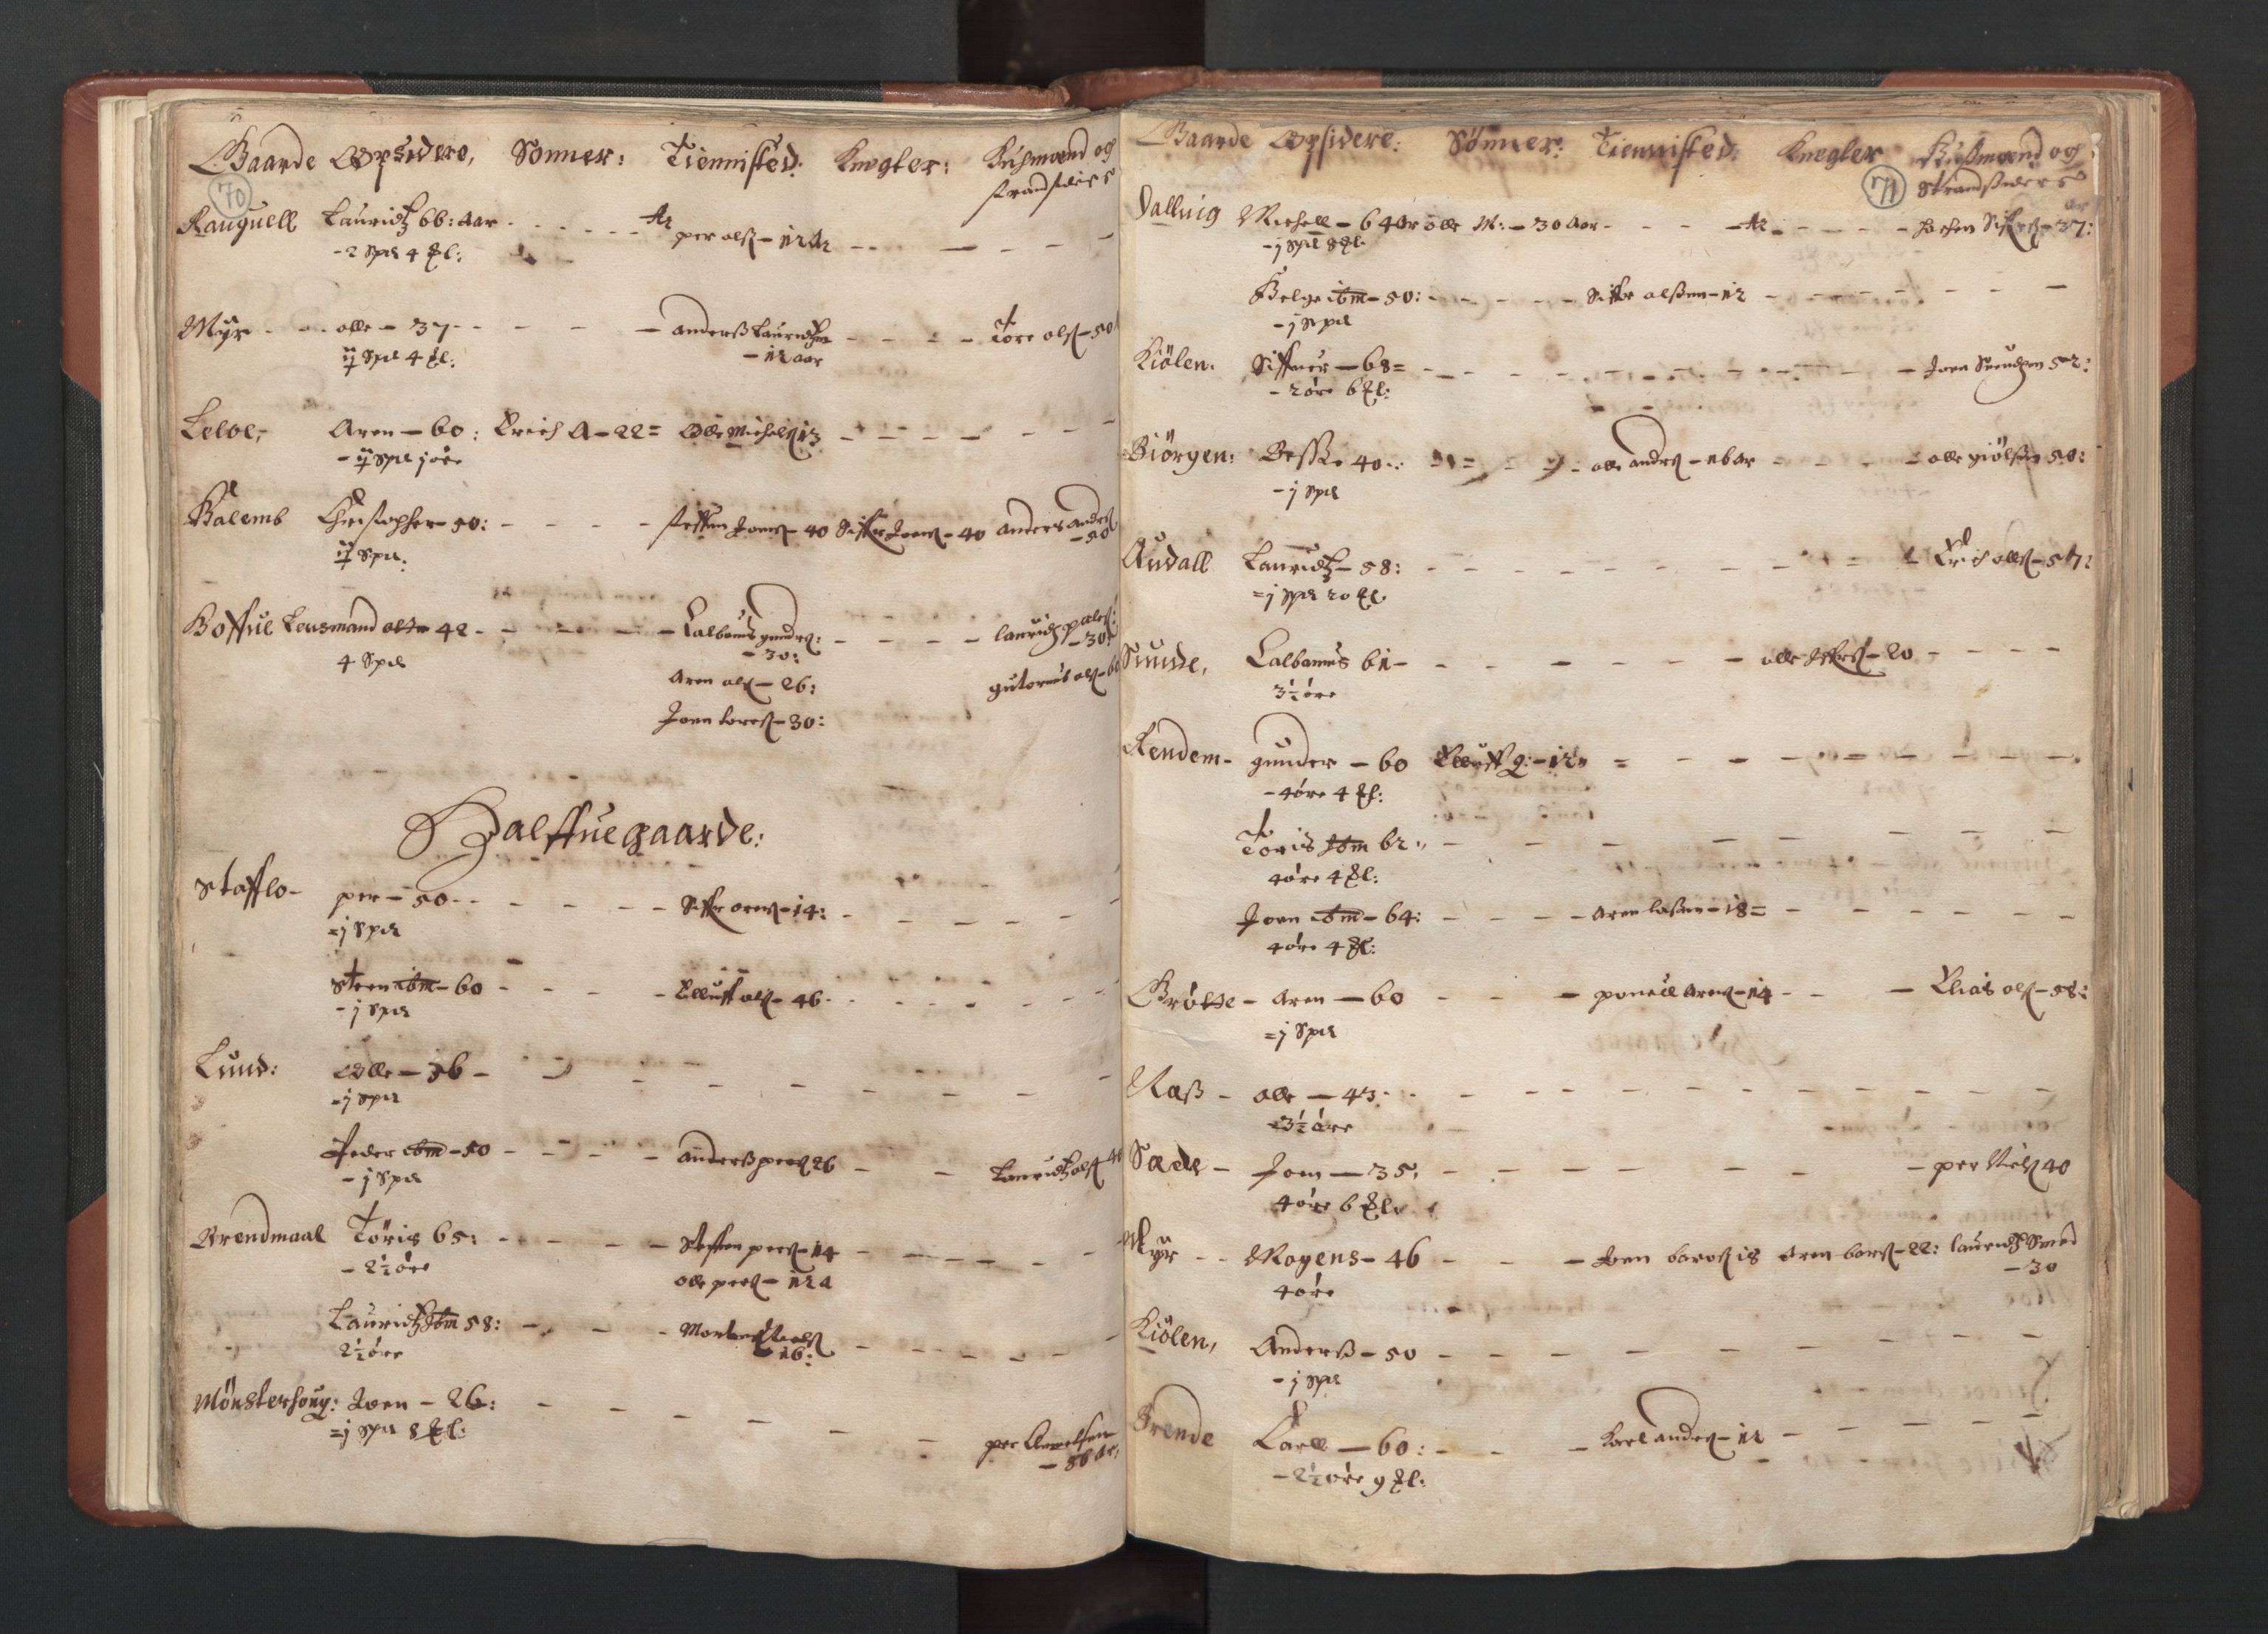 RA, Fogdenes og sorenskrivernes manntall 1664-1666, nr. 19: Fosen fogderi, Inderøy fogderi, Selbu fogderi, Namdal fogderi og Stjørdal fogderi, 1664-1665, s. 70-71